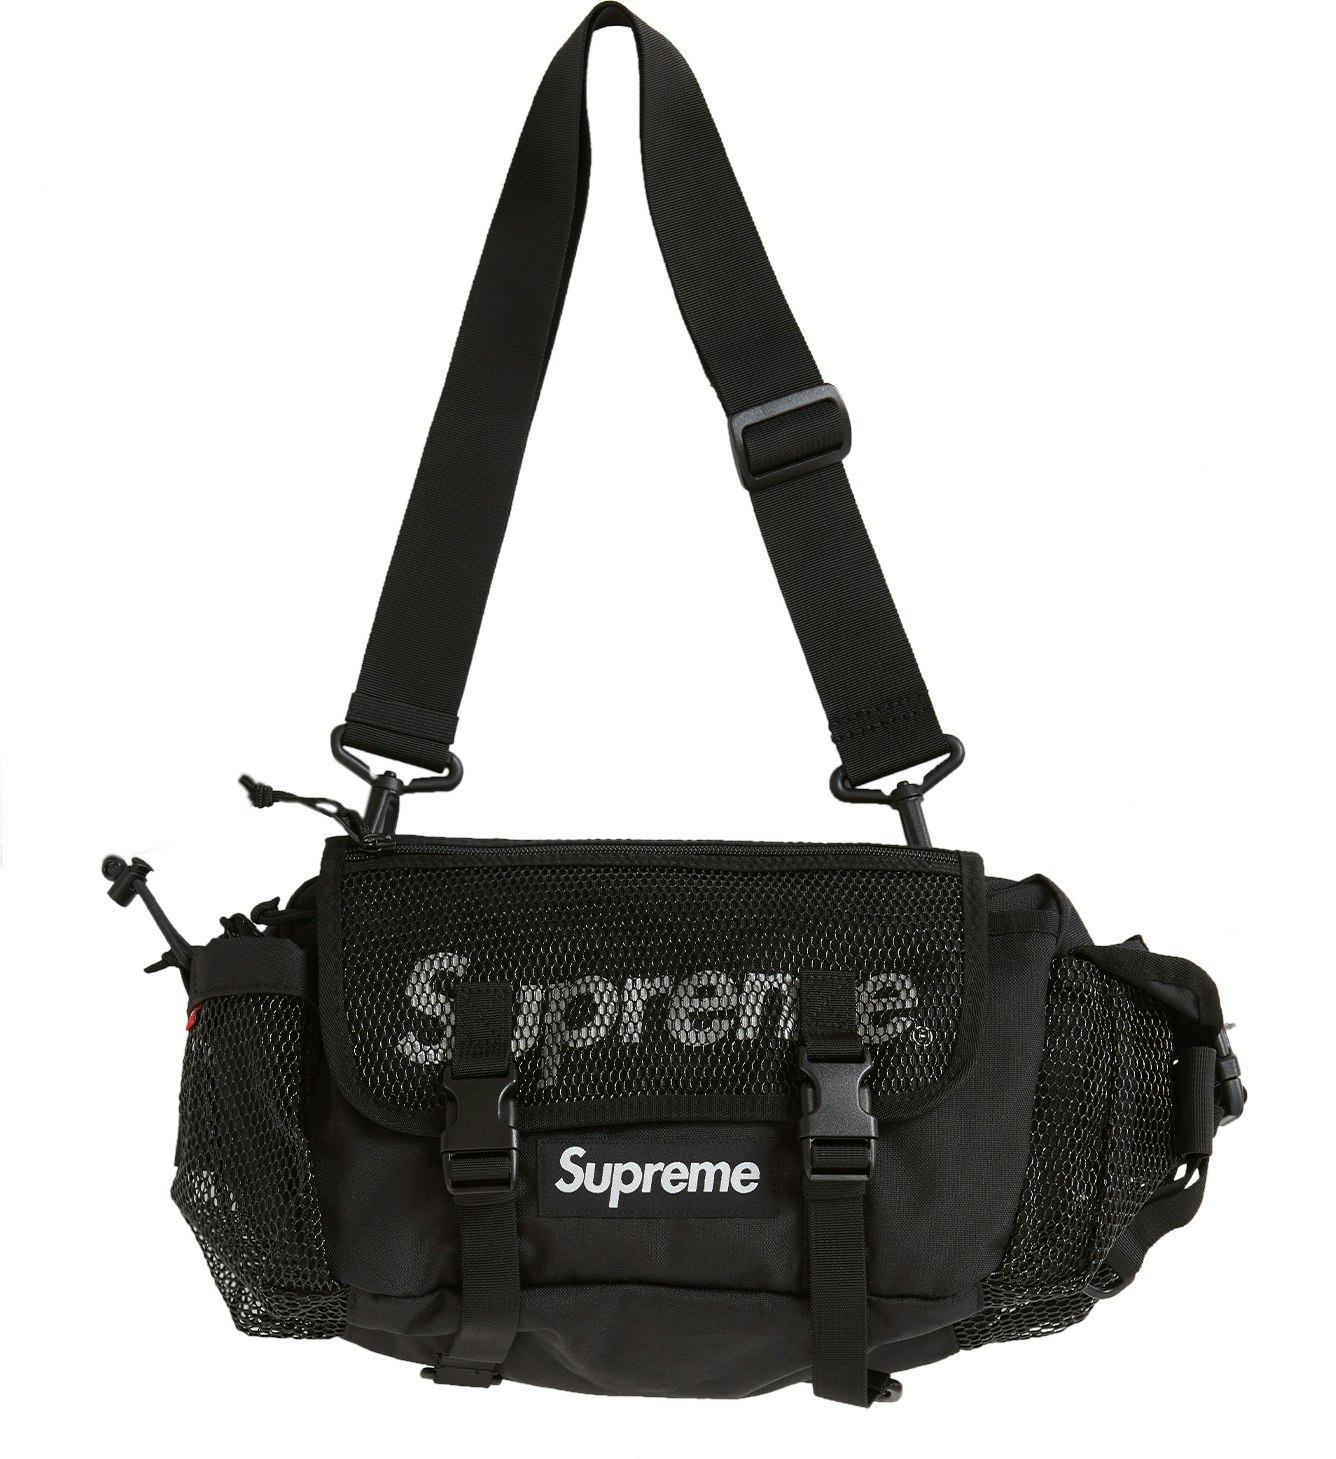 Supreme waist bag - Gem